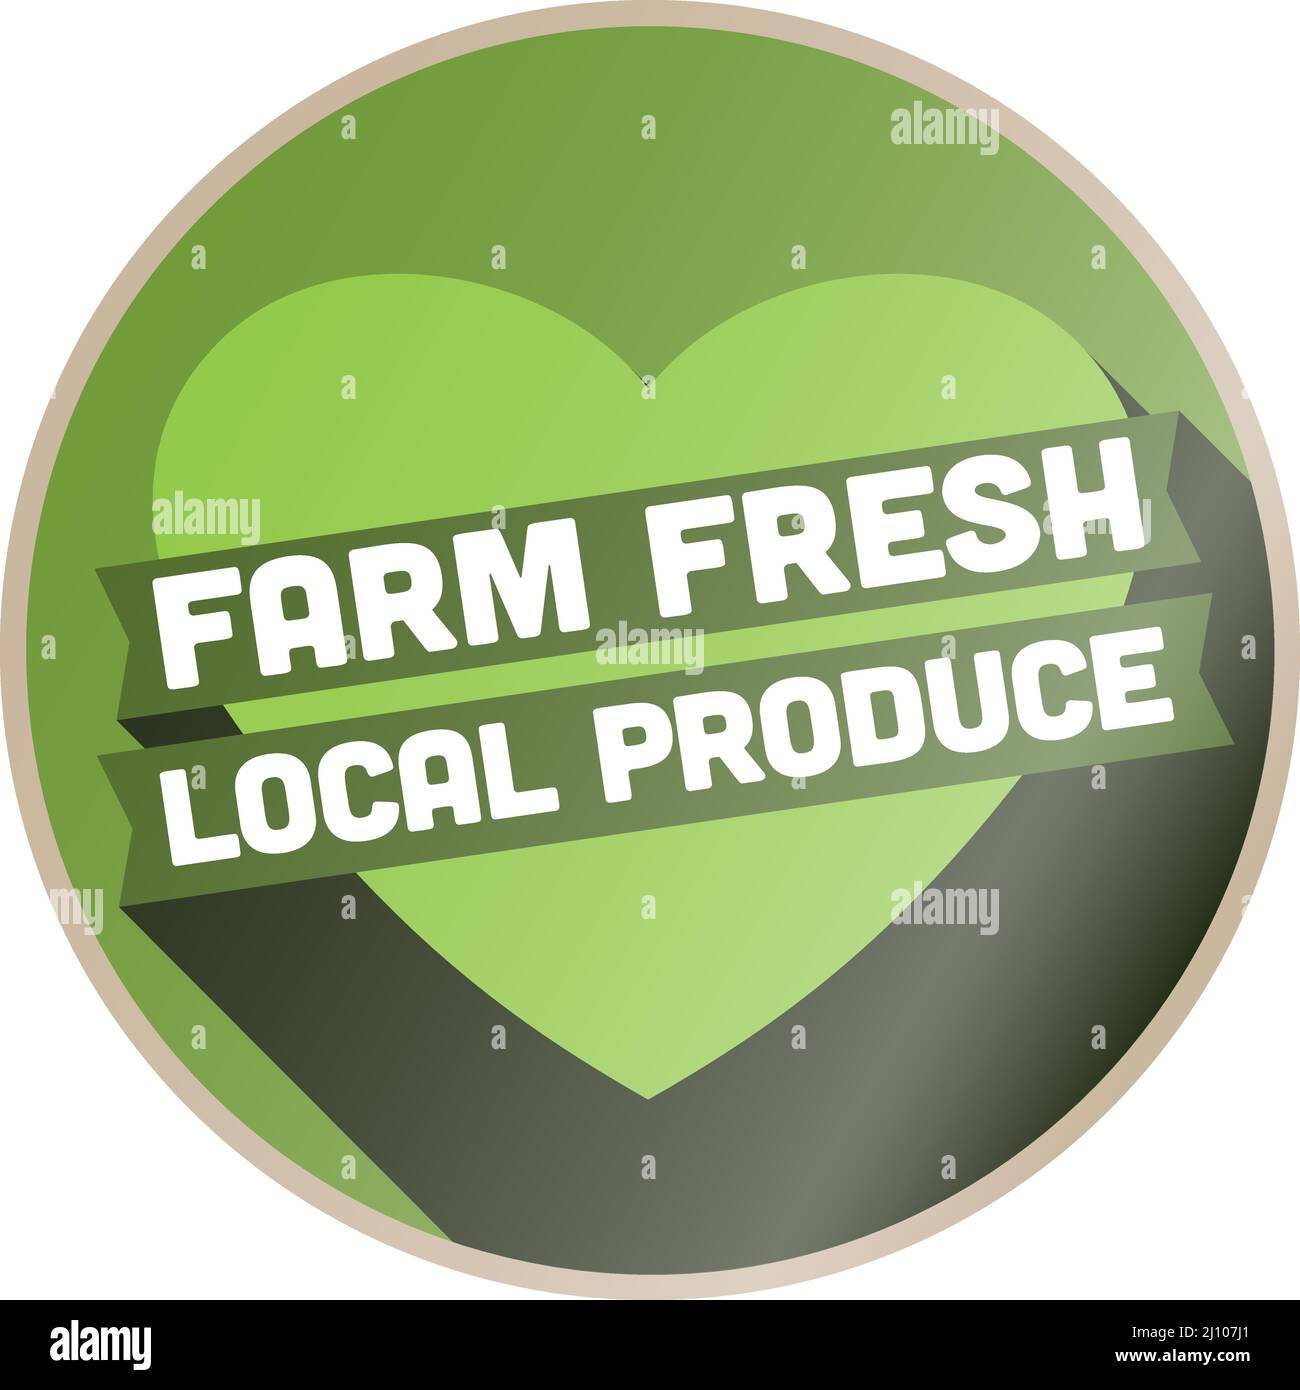 AFFICHE ou étiquette DE PRODUITS LOCAUX FRAIS DE LA FERME avec coeur vert, illustration vectorielle Illustration de Vecteur